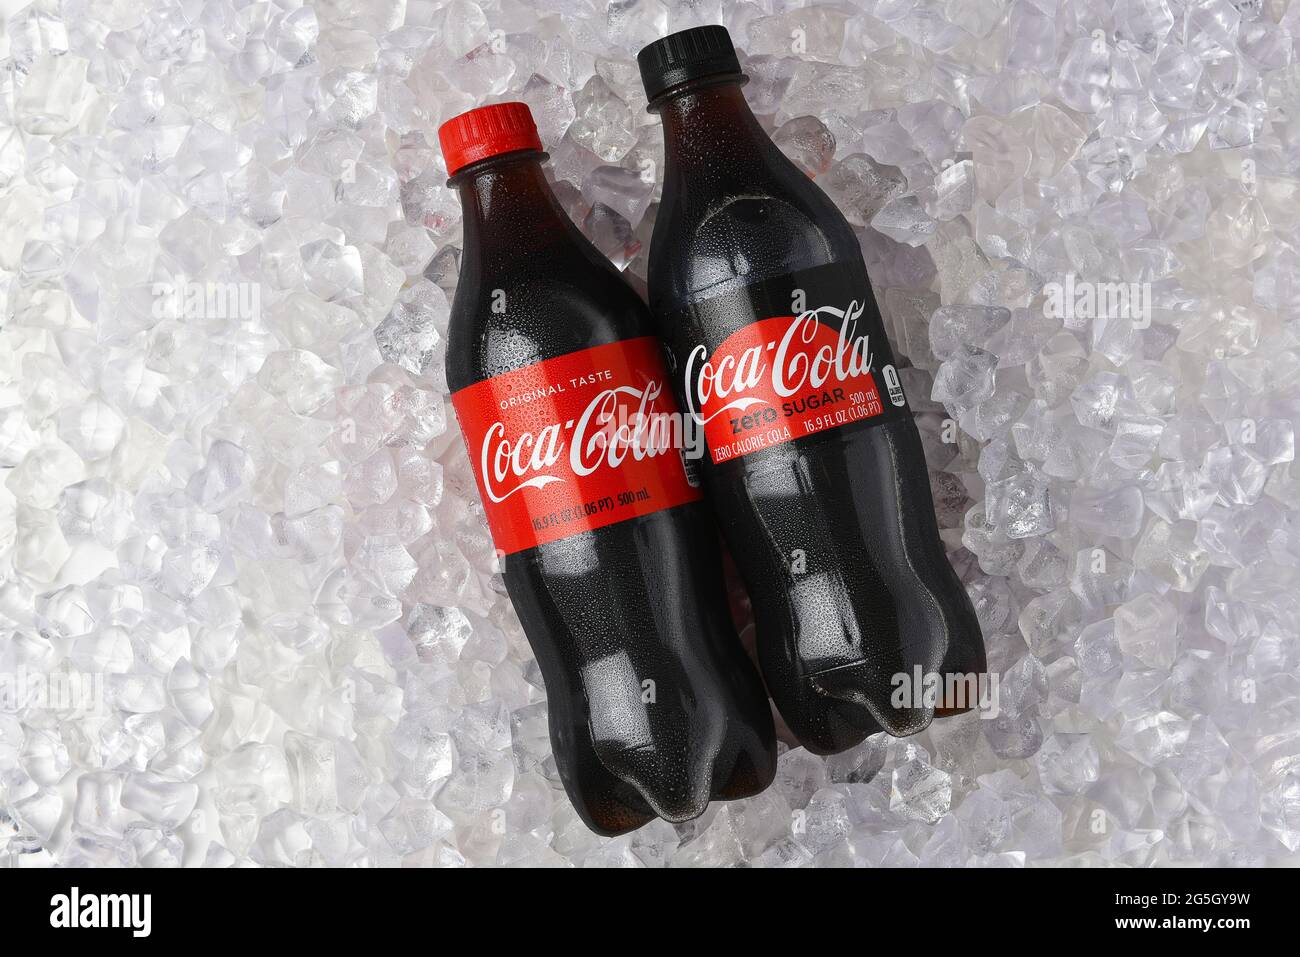 IRVINE, CALIFORNIE - 26 JUIN 2021 : une bouteille de Coca-Cola et de Coca- Cola Zero dans un lit de glace Photo Stock - Alamy